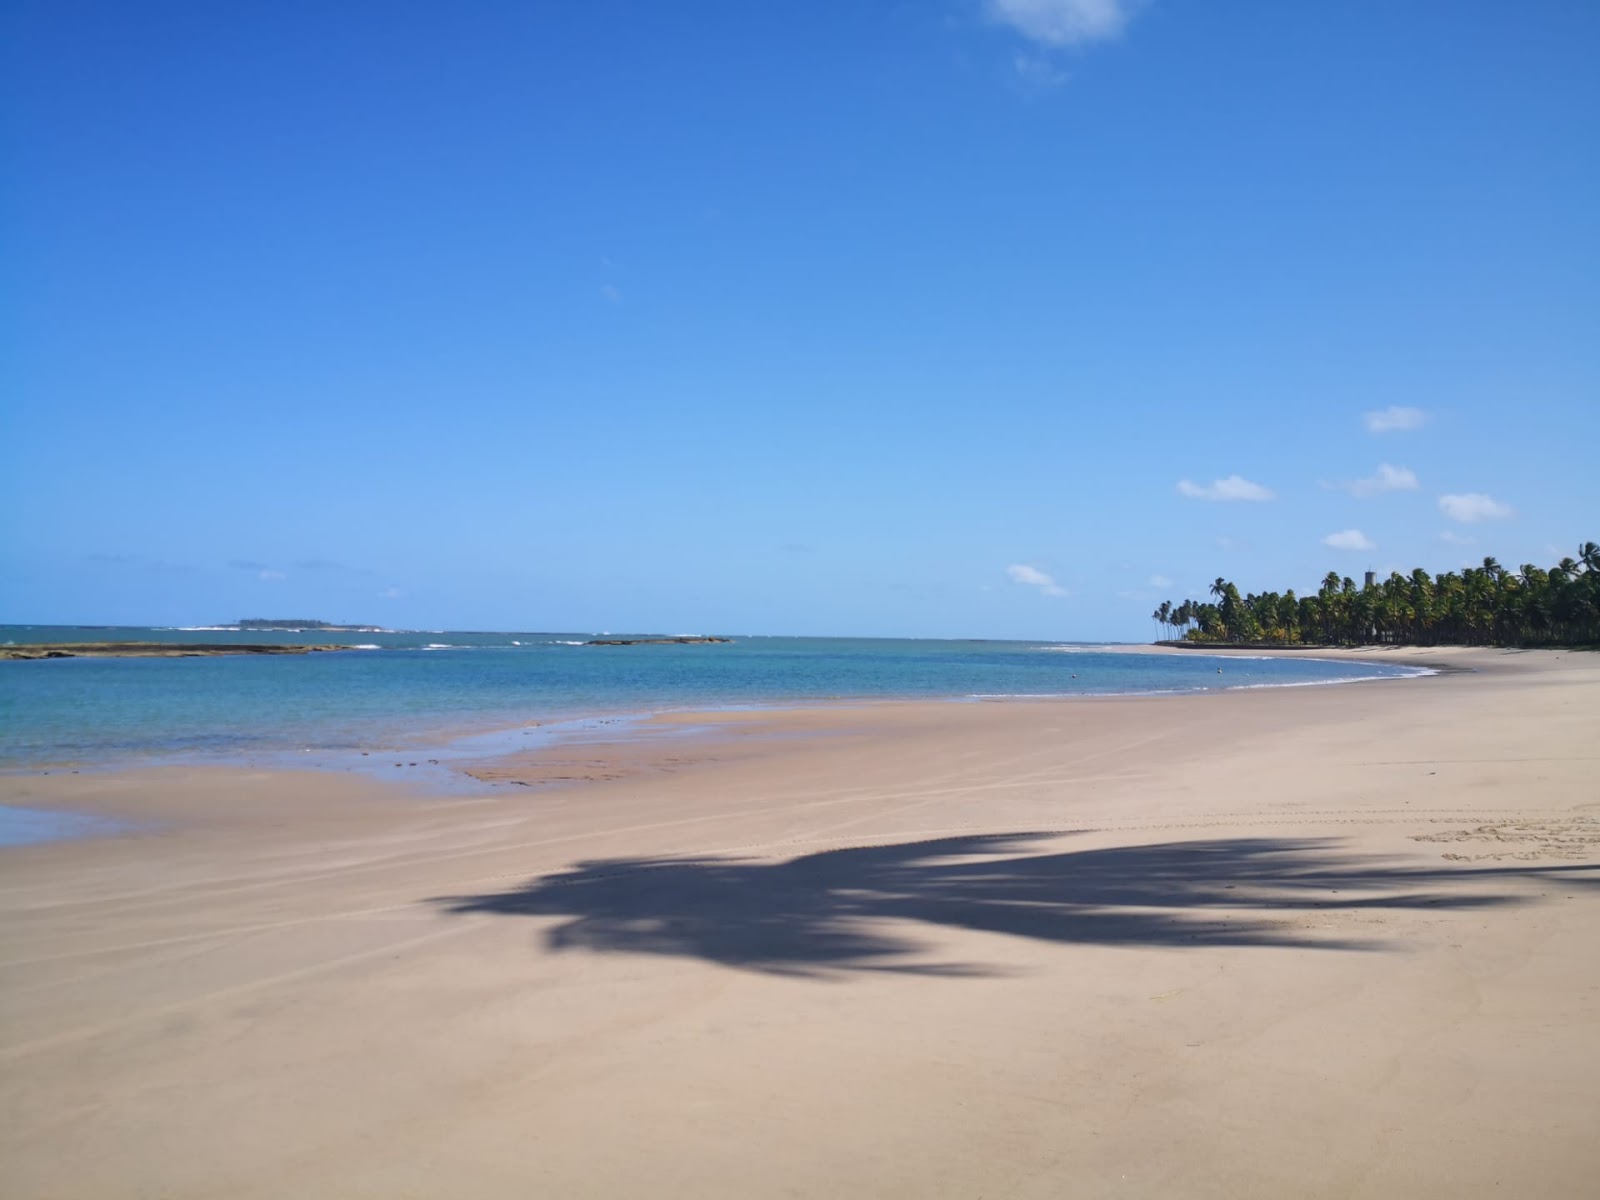 Zdjęcie Toquinho Beach - popularne miejsce wśród znawców relaksu